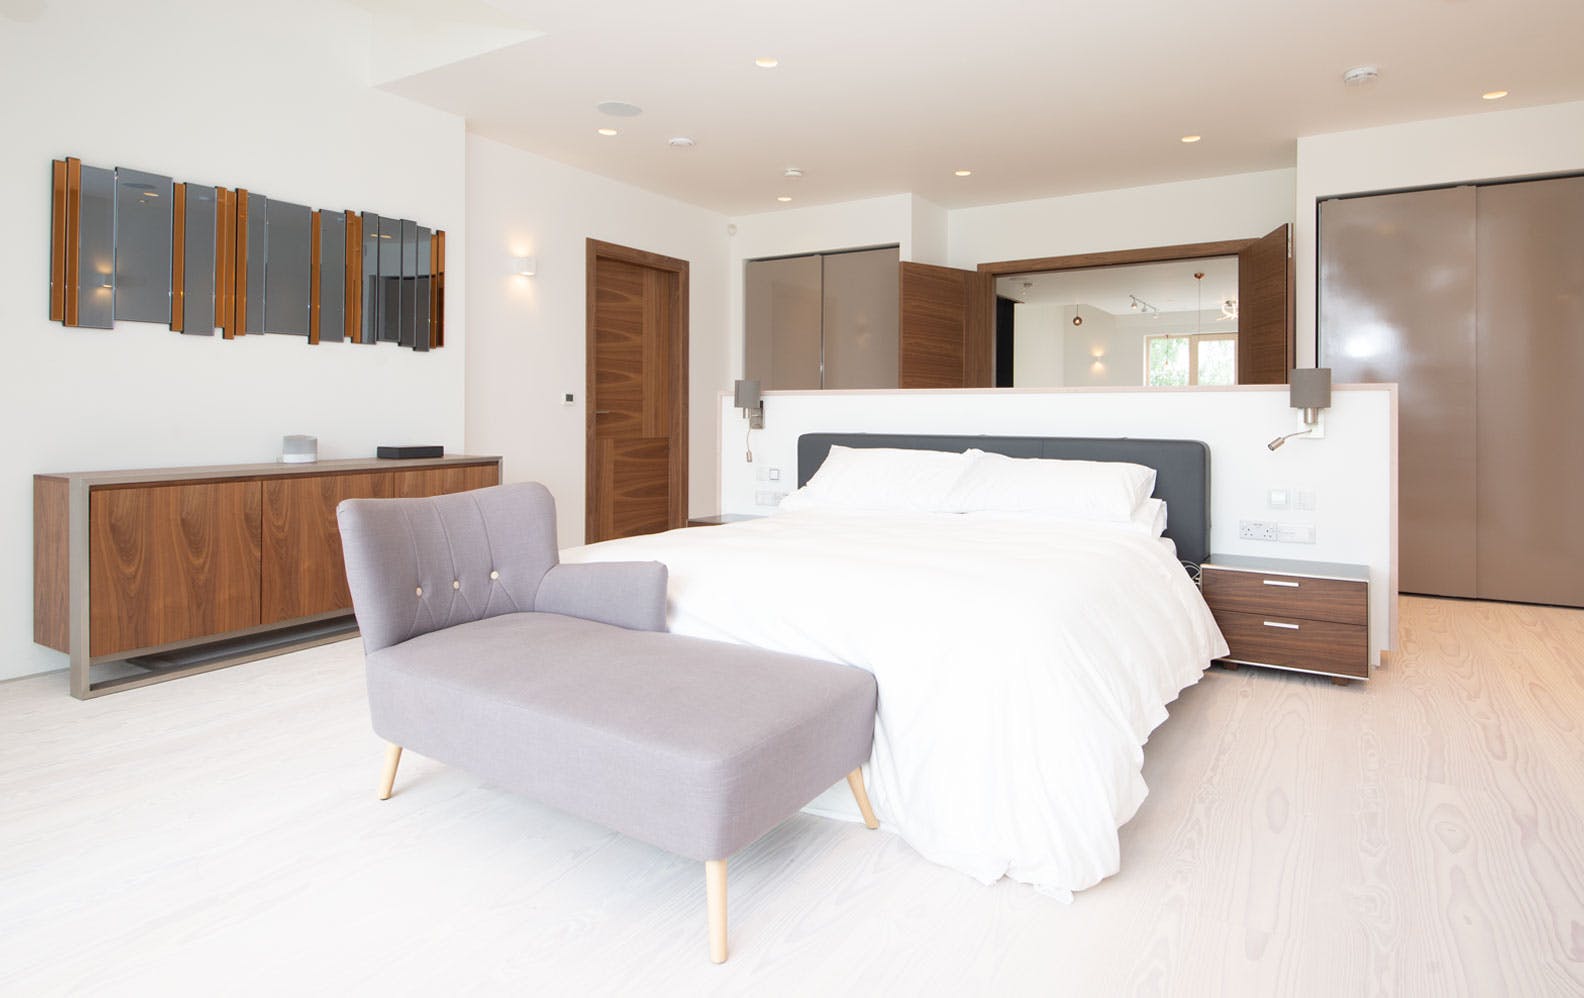 A generous modern master bedroom featuring Deuren door sets- Vario 4 style, in a walnut veneer finish.